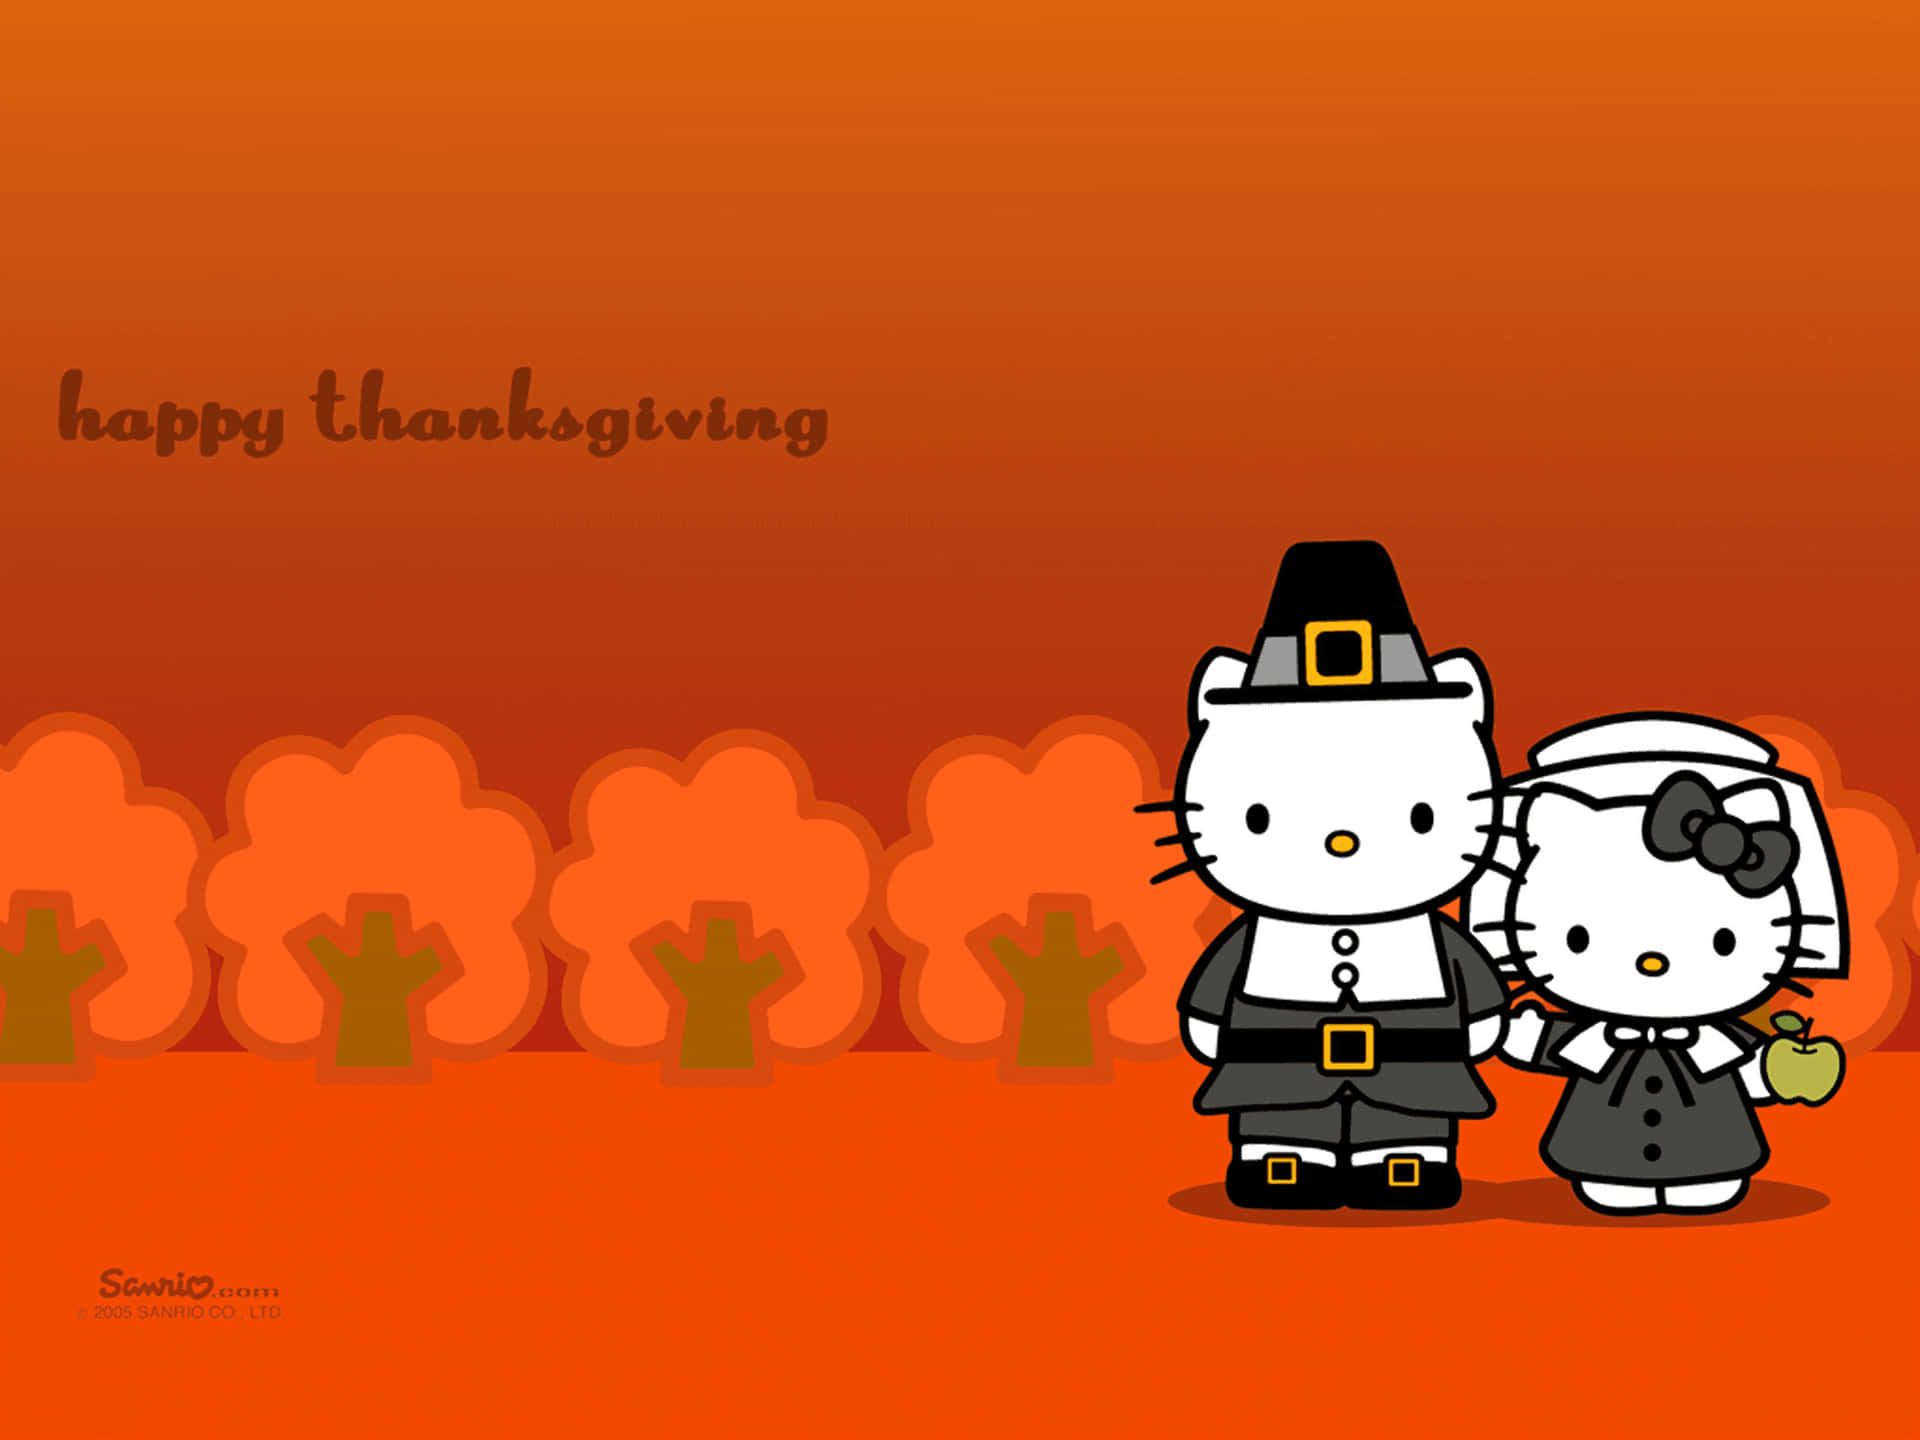 Ichwünsche Dir Einen Zeichentrickreichen Thanksgiving! Wallpaper